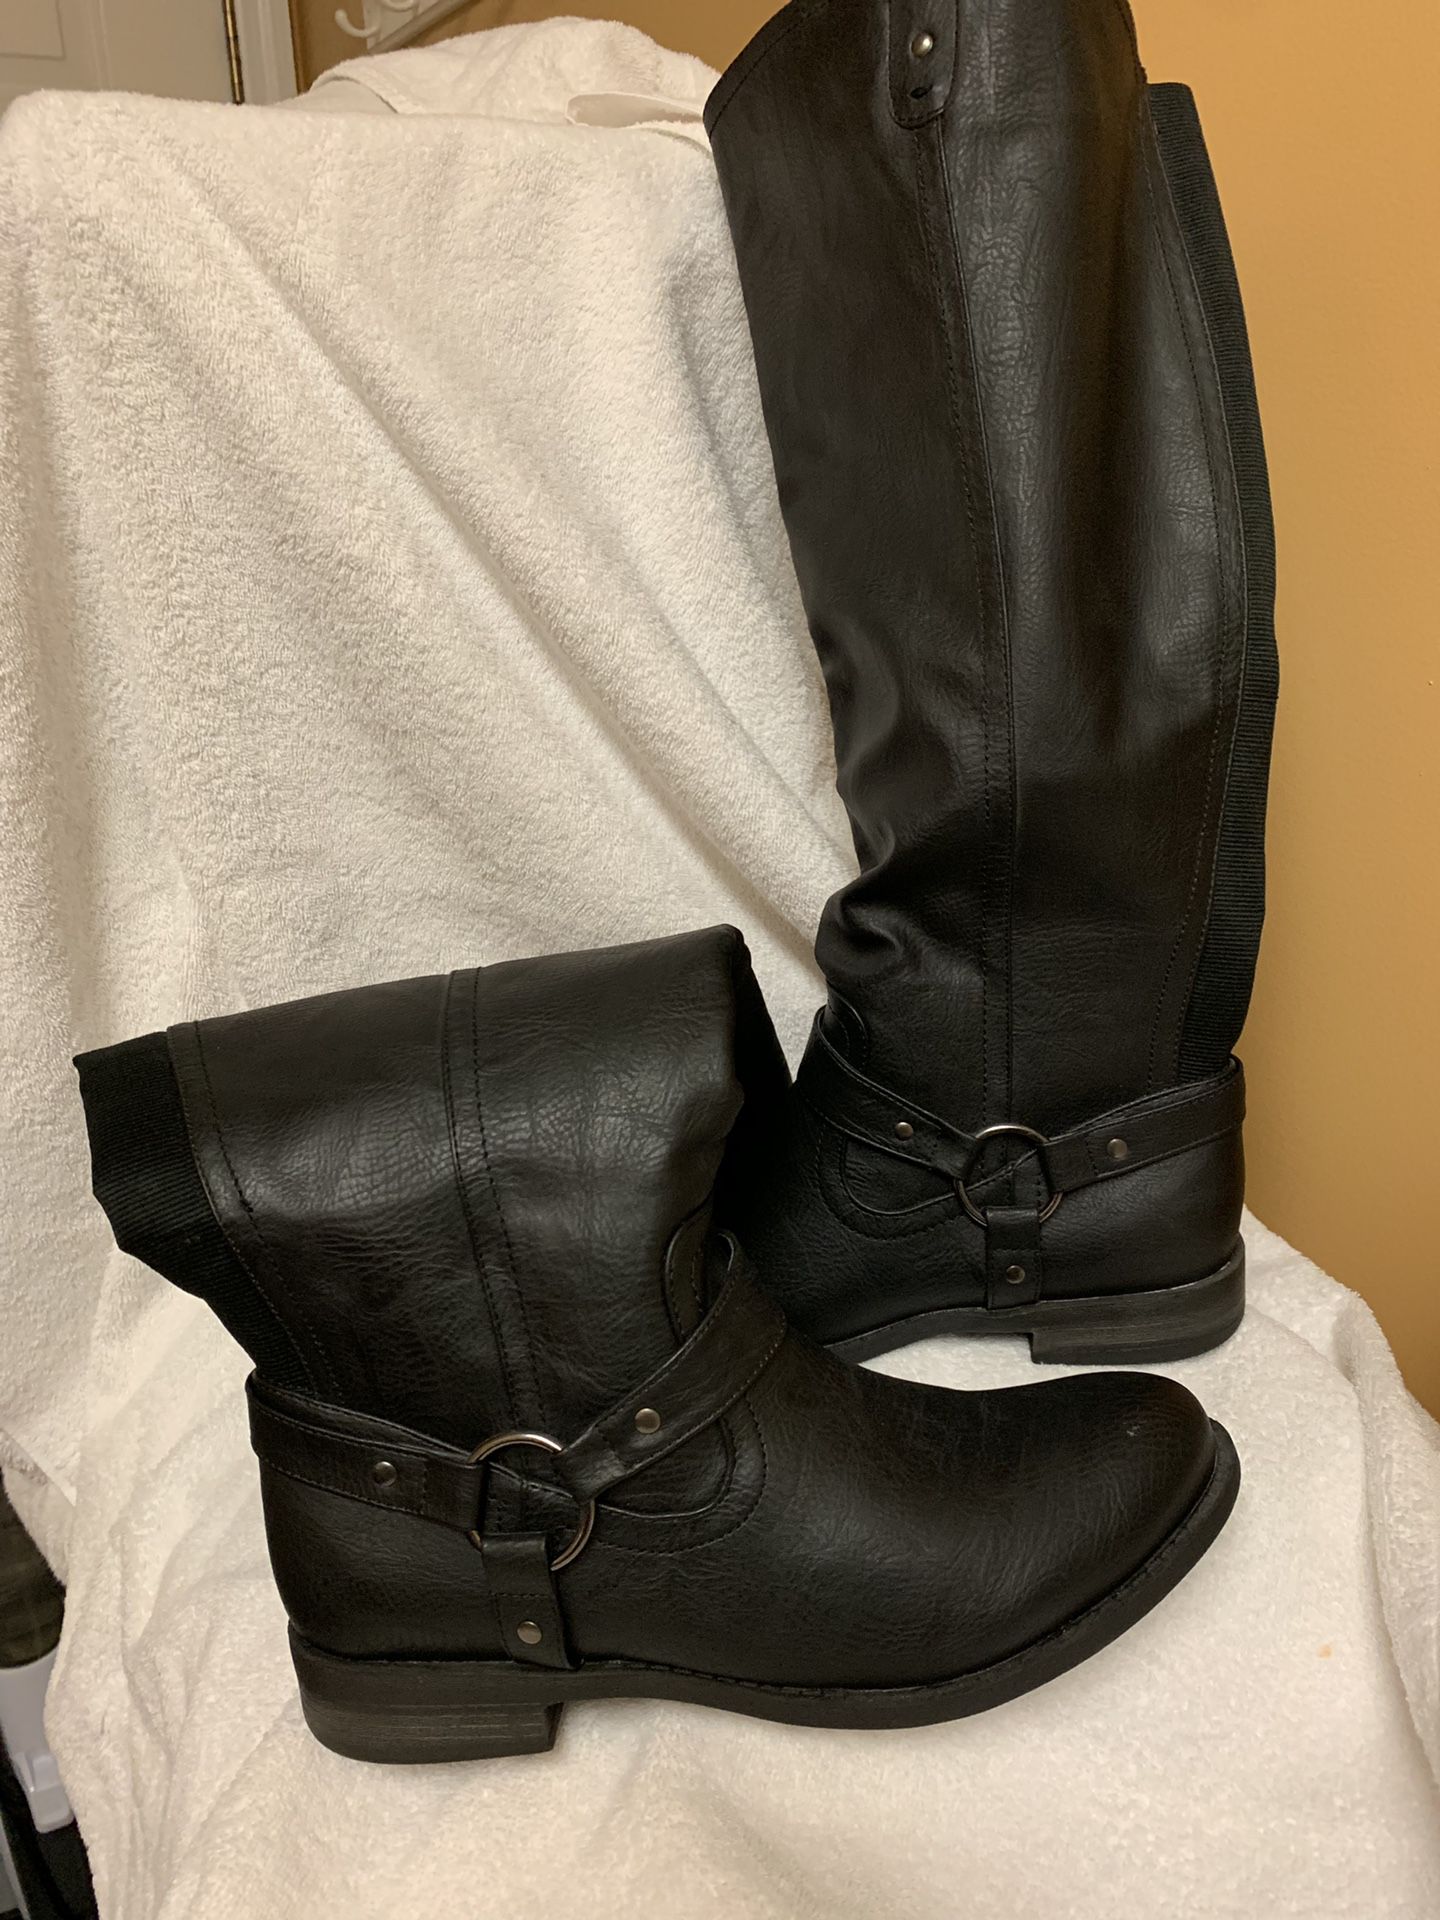 Women’s knee high boots